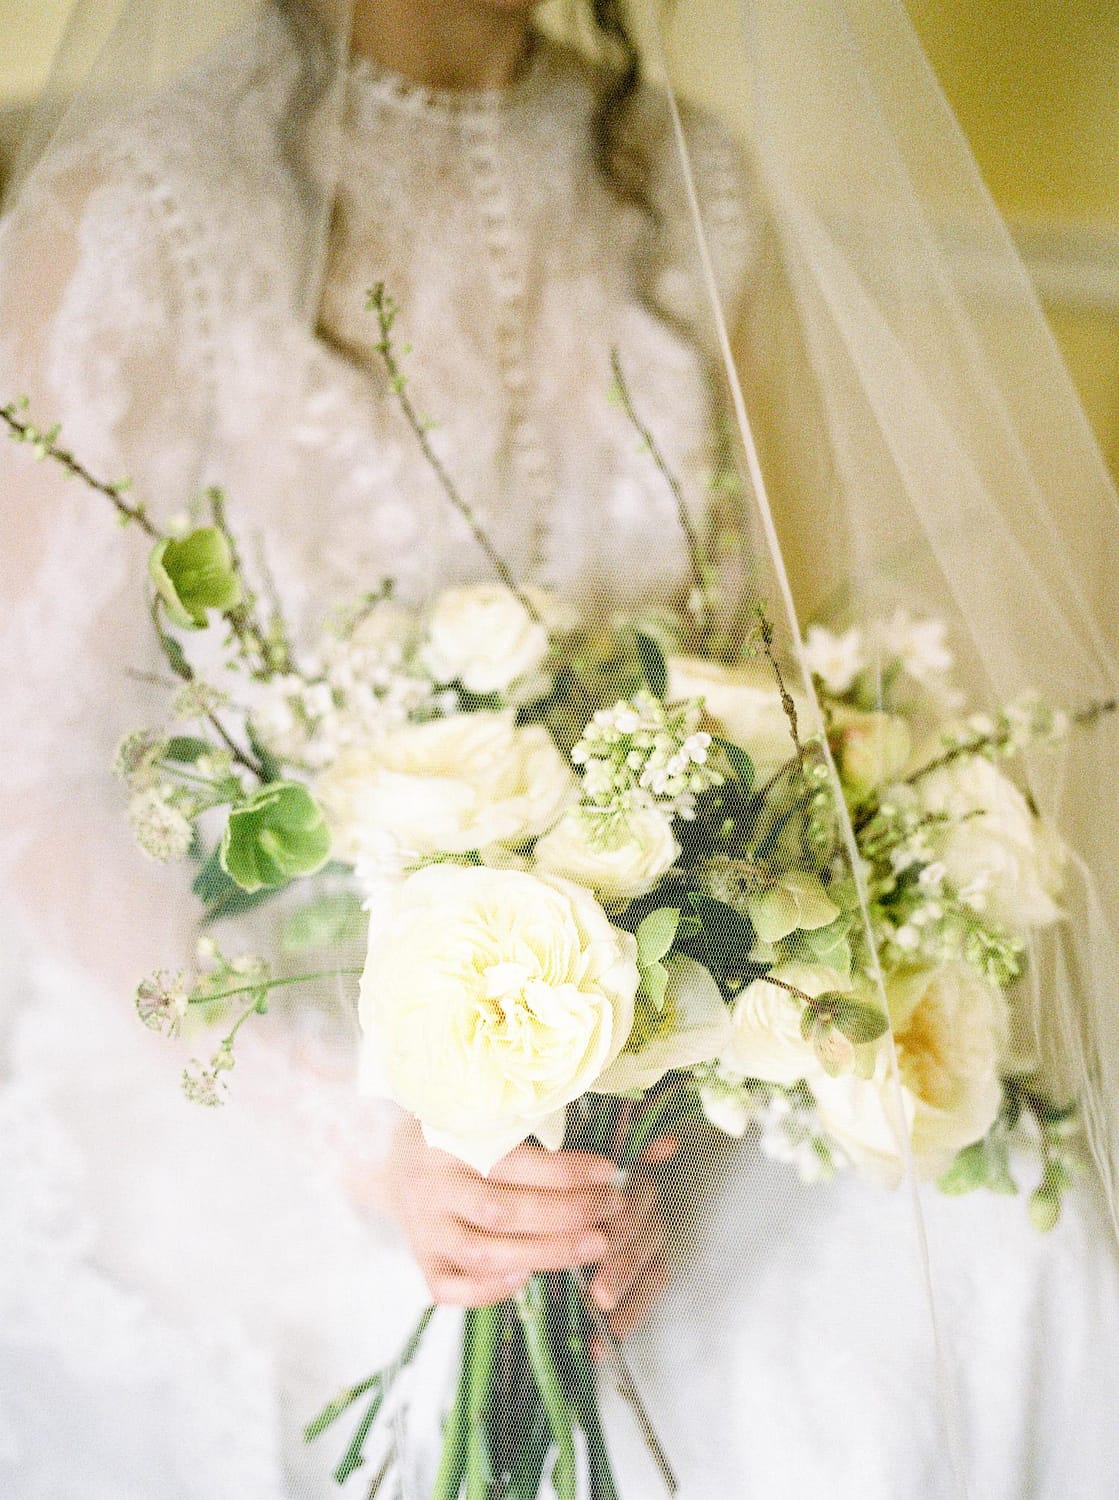 Brautstrauß mit weißen Rosen